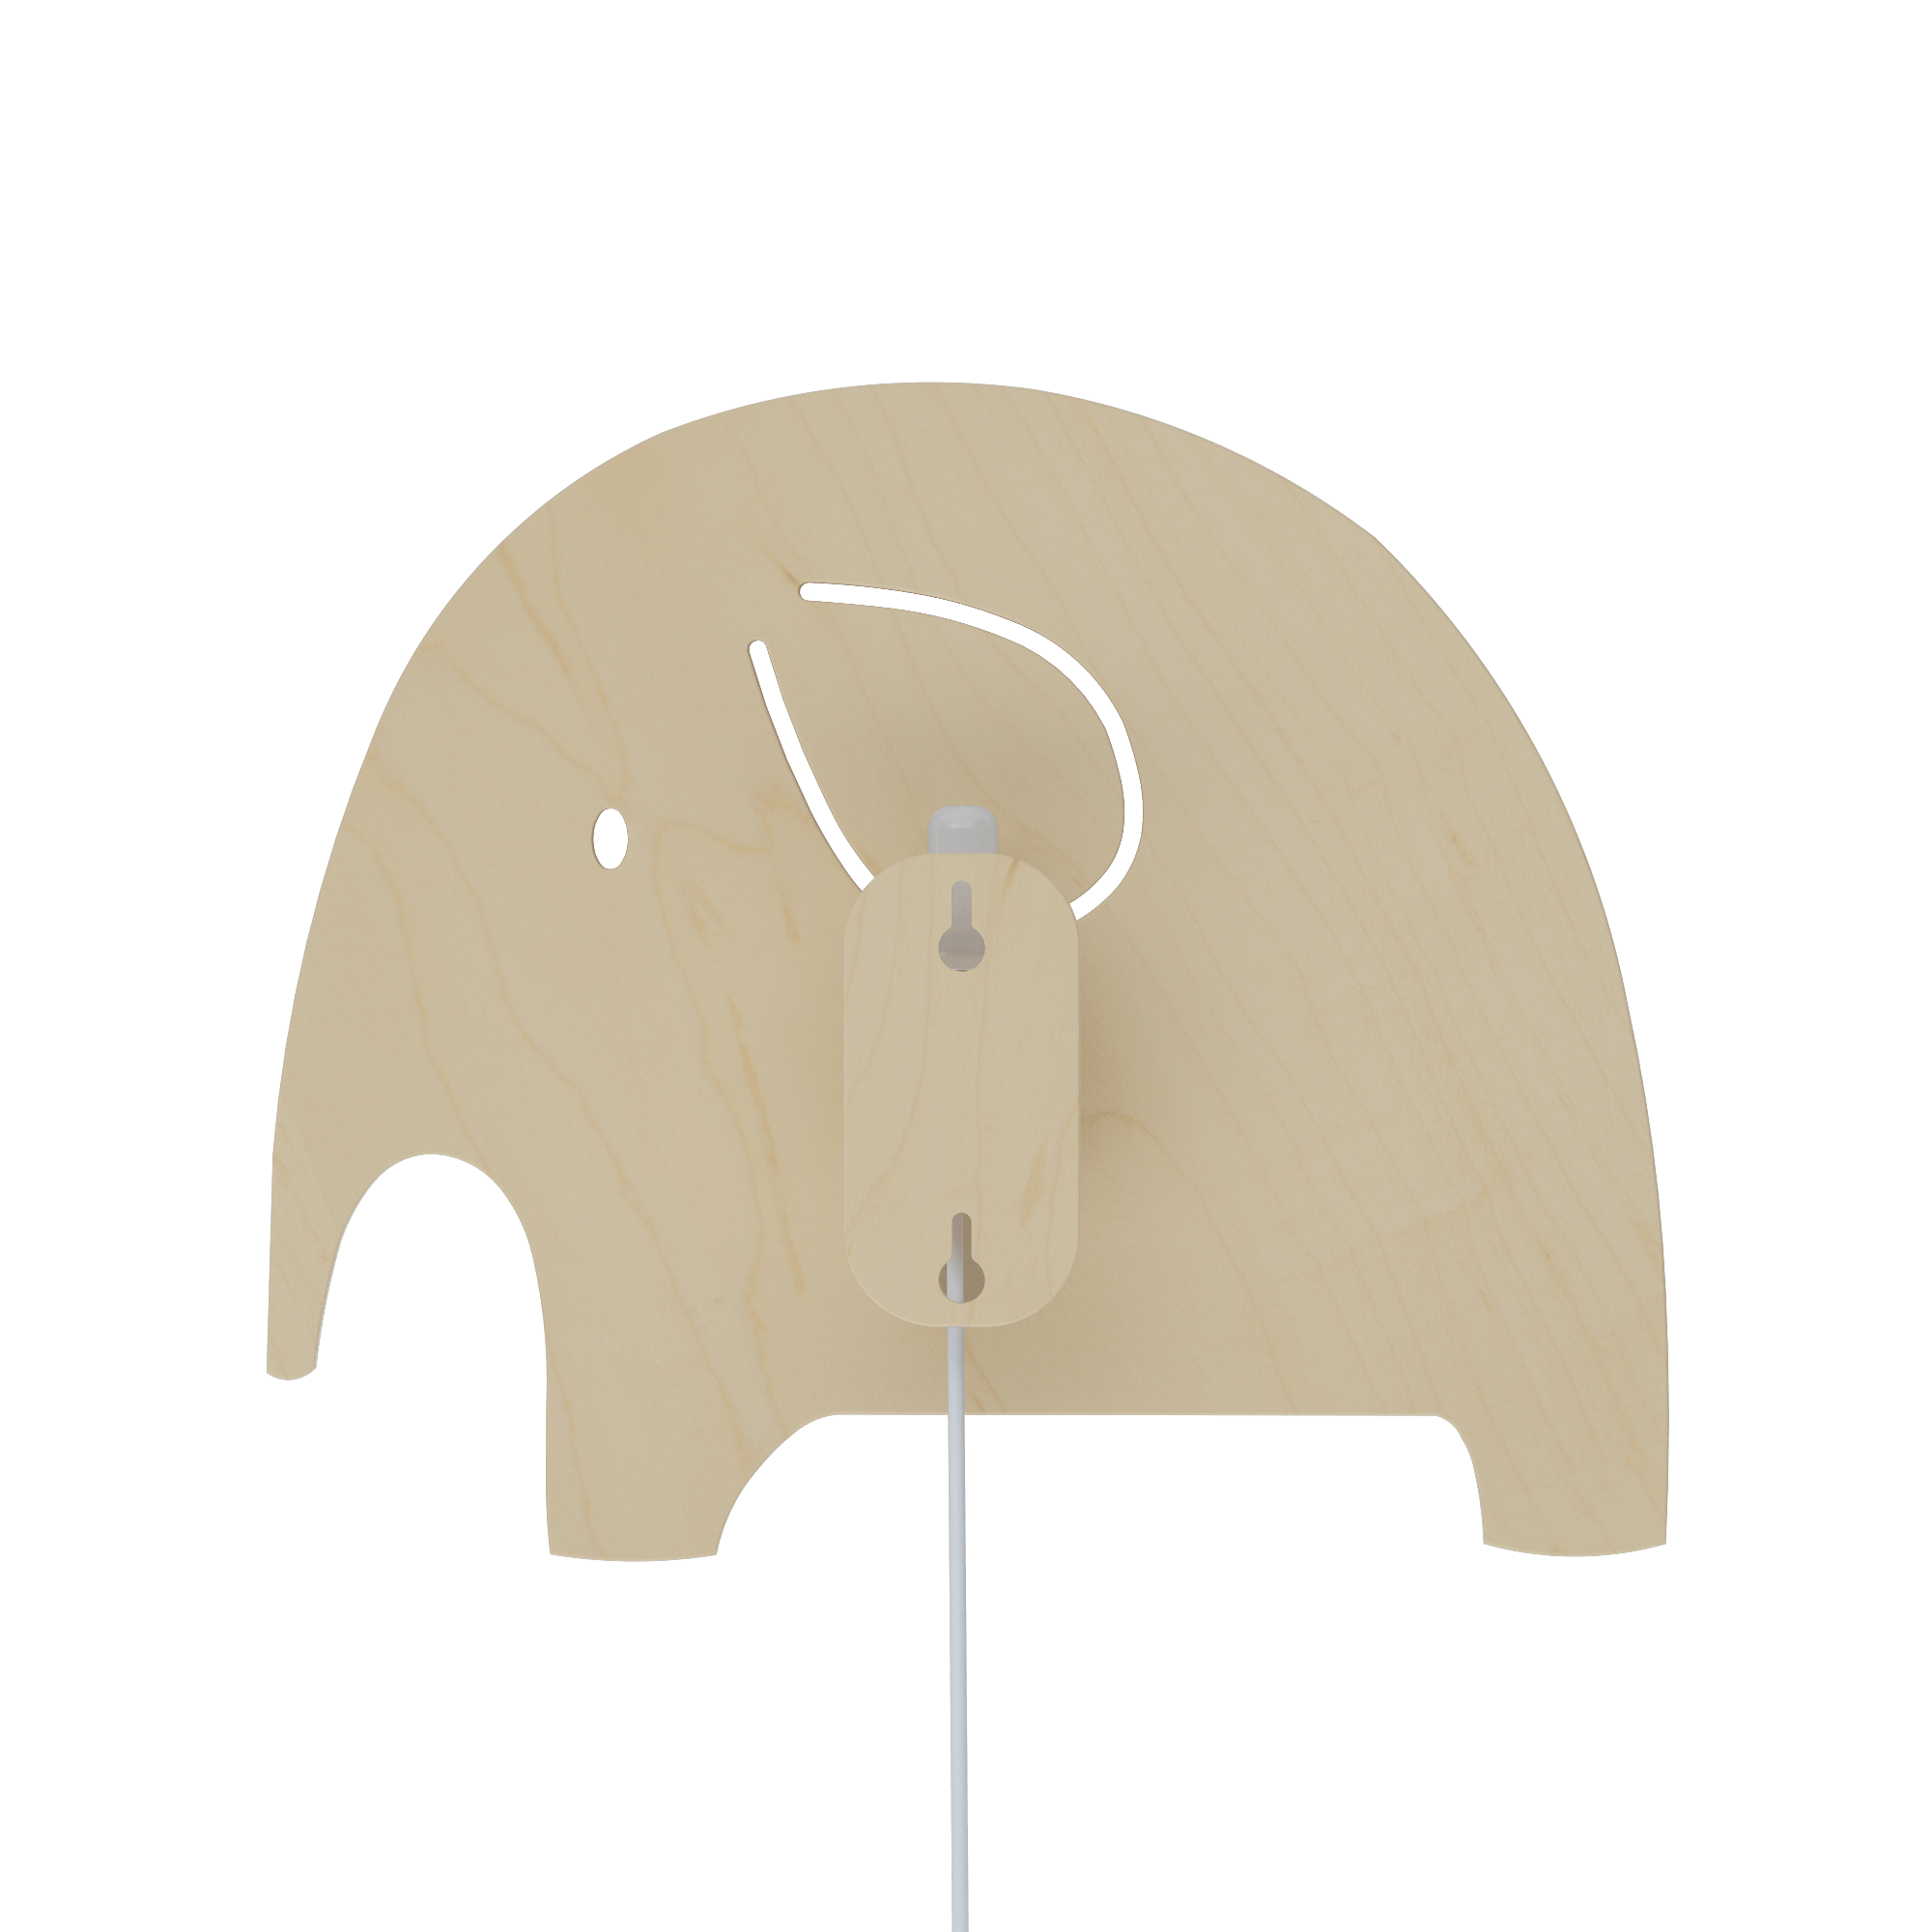 ELEPHANT | WOODEN - Zuri House